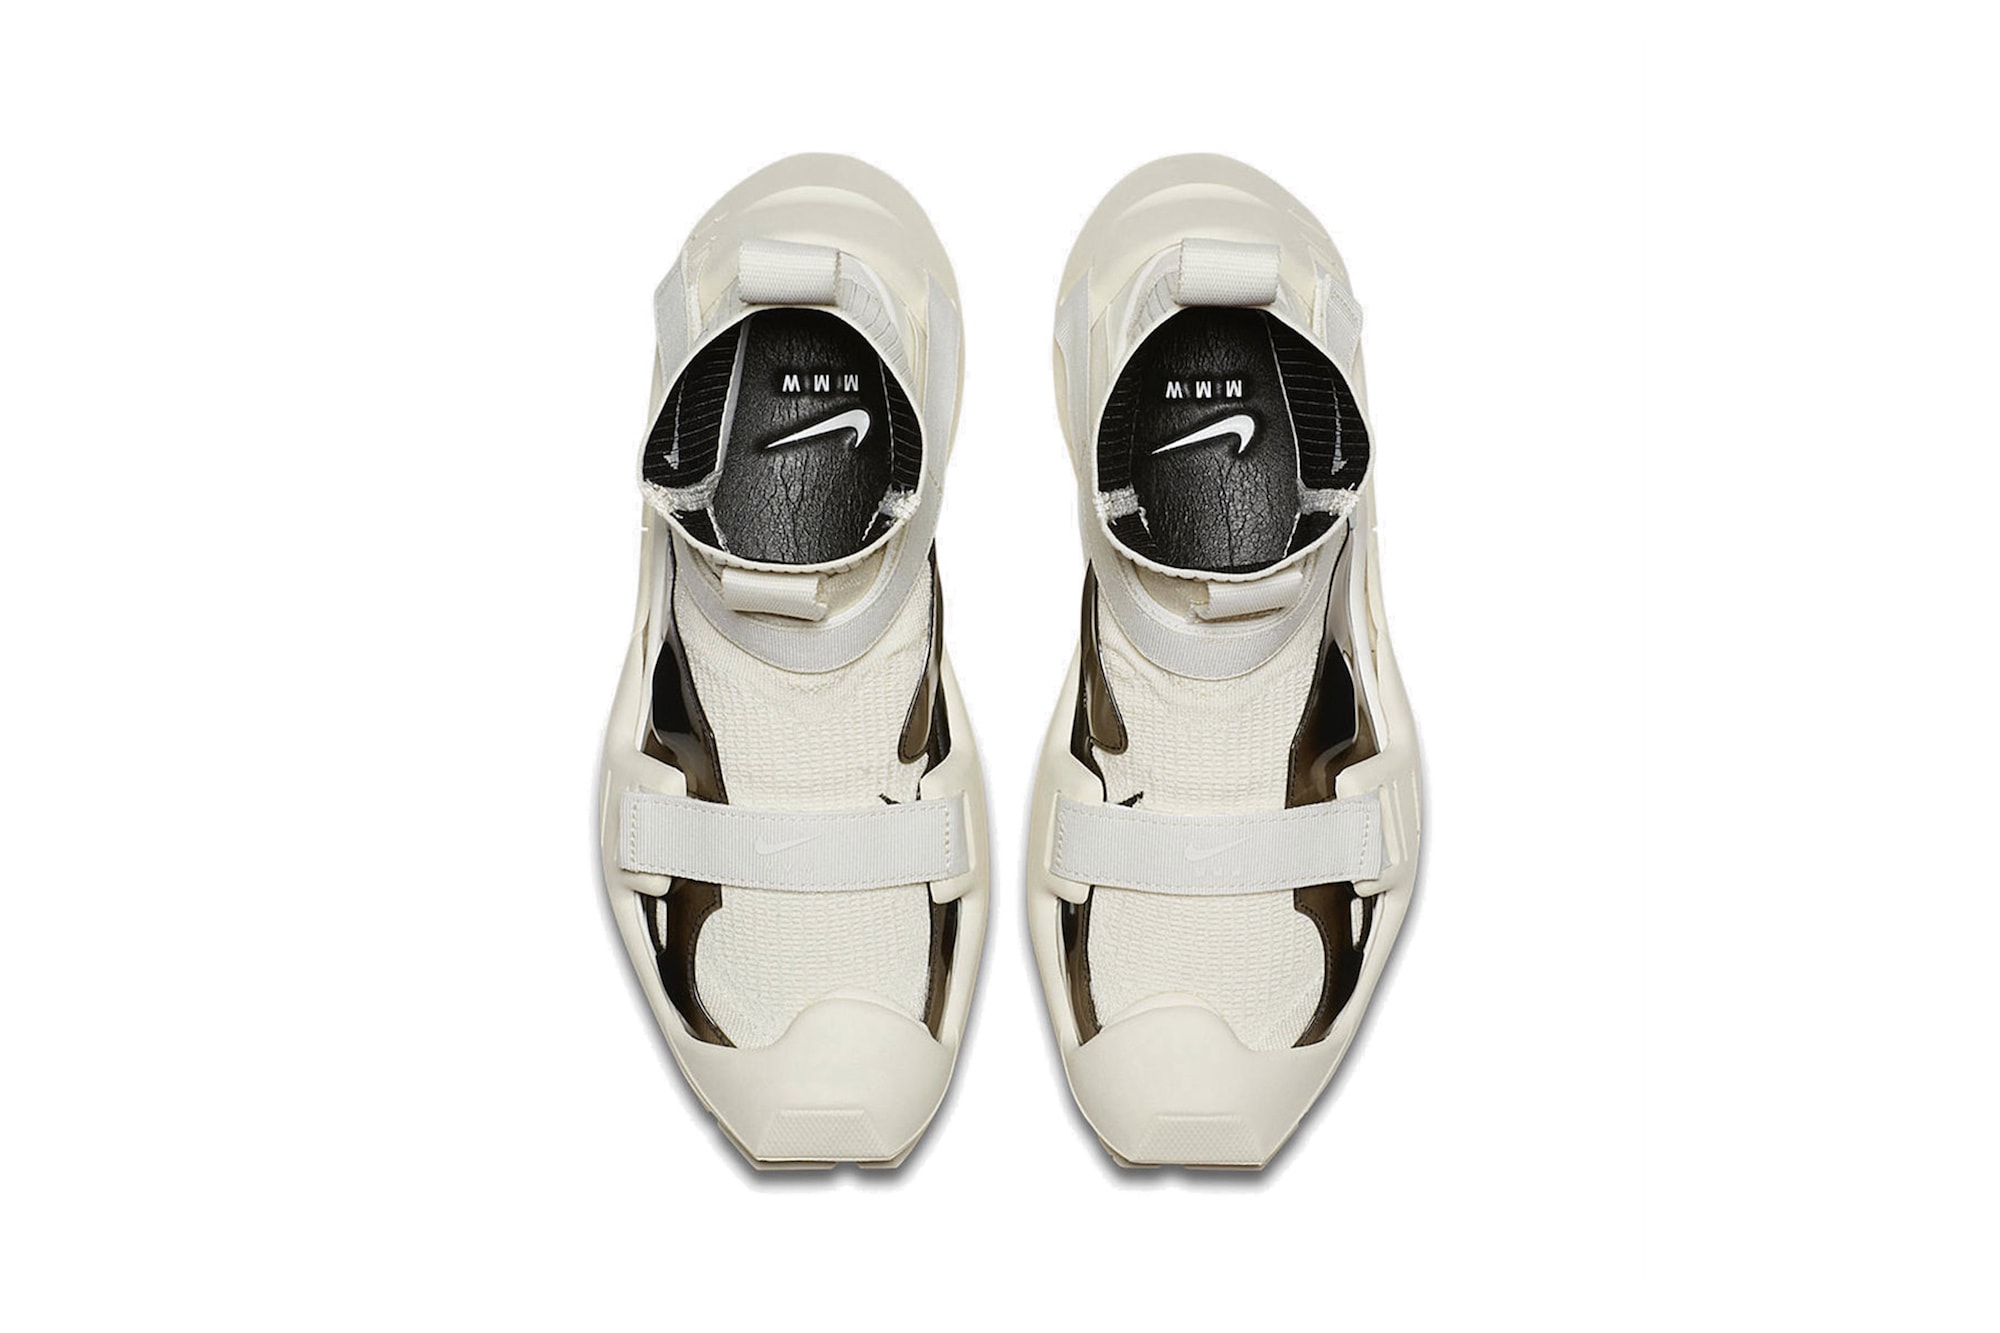 ALYX Nike Vibram Sock Sneaker Matthew Williams Black White First Look Logo Swoosh Detachable Sole Release Date